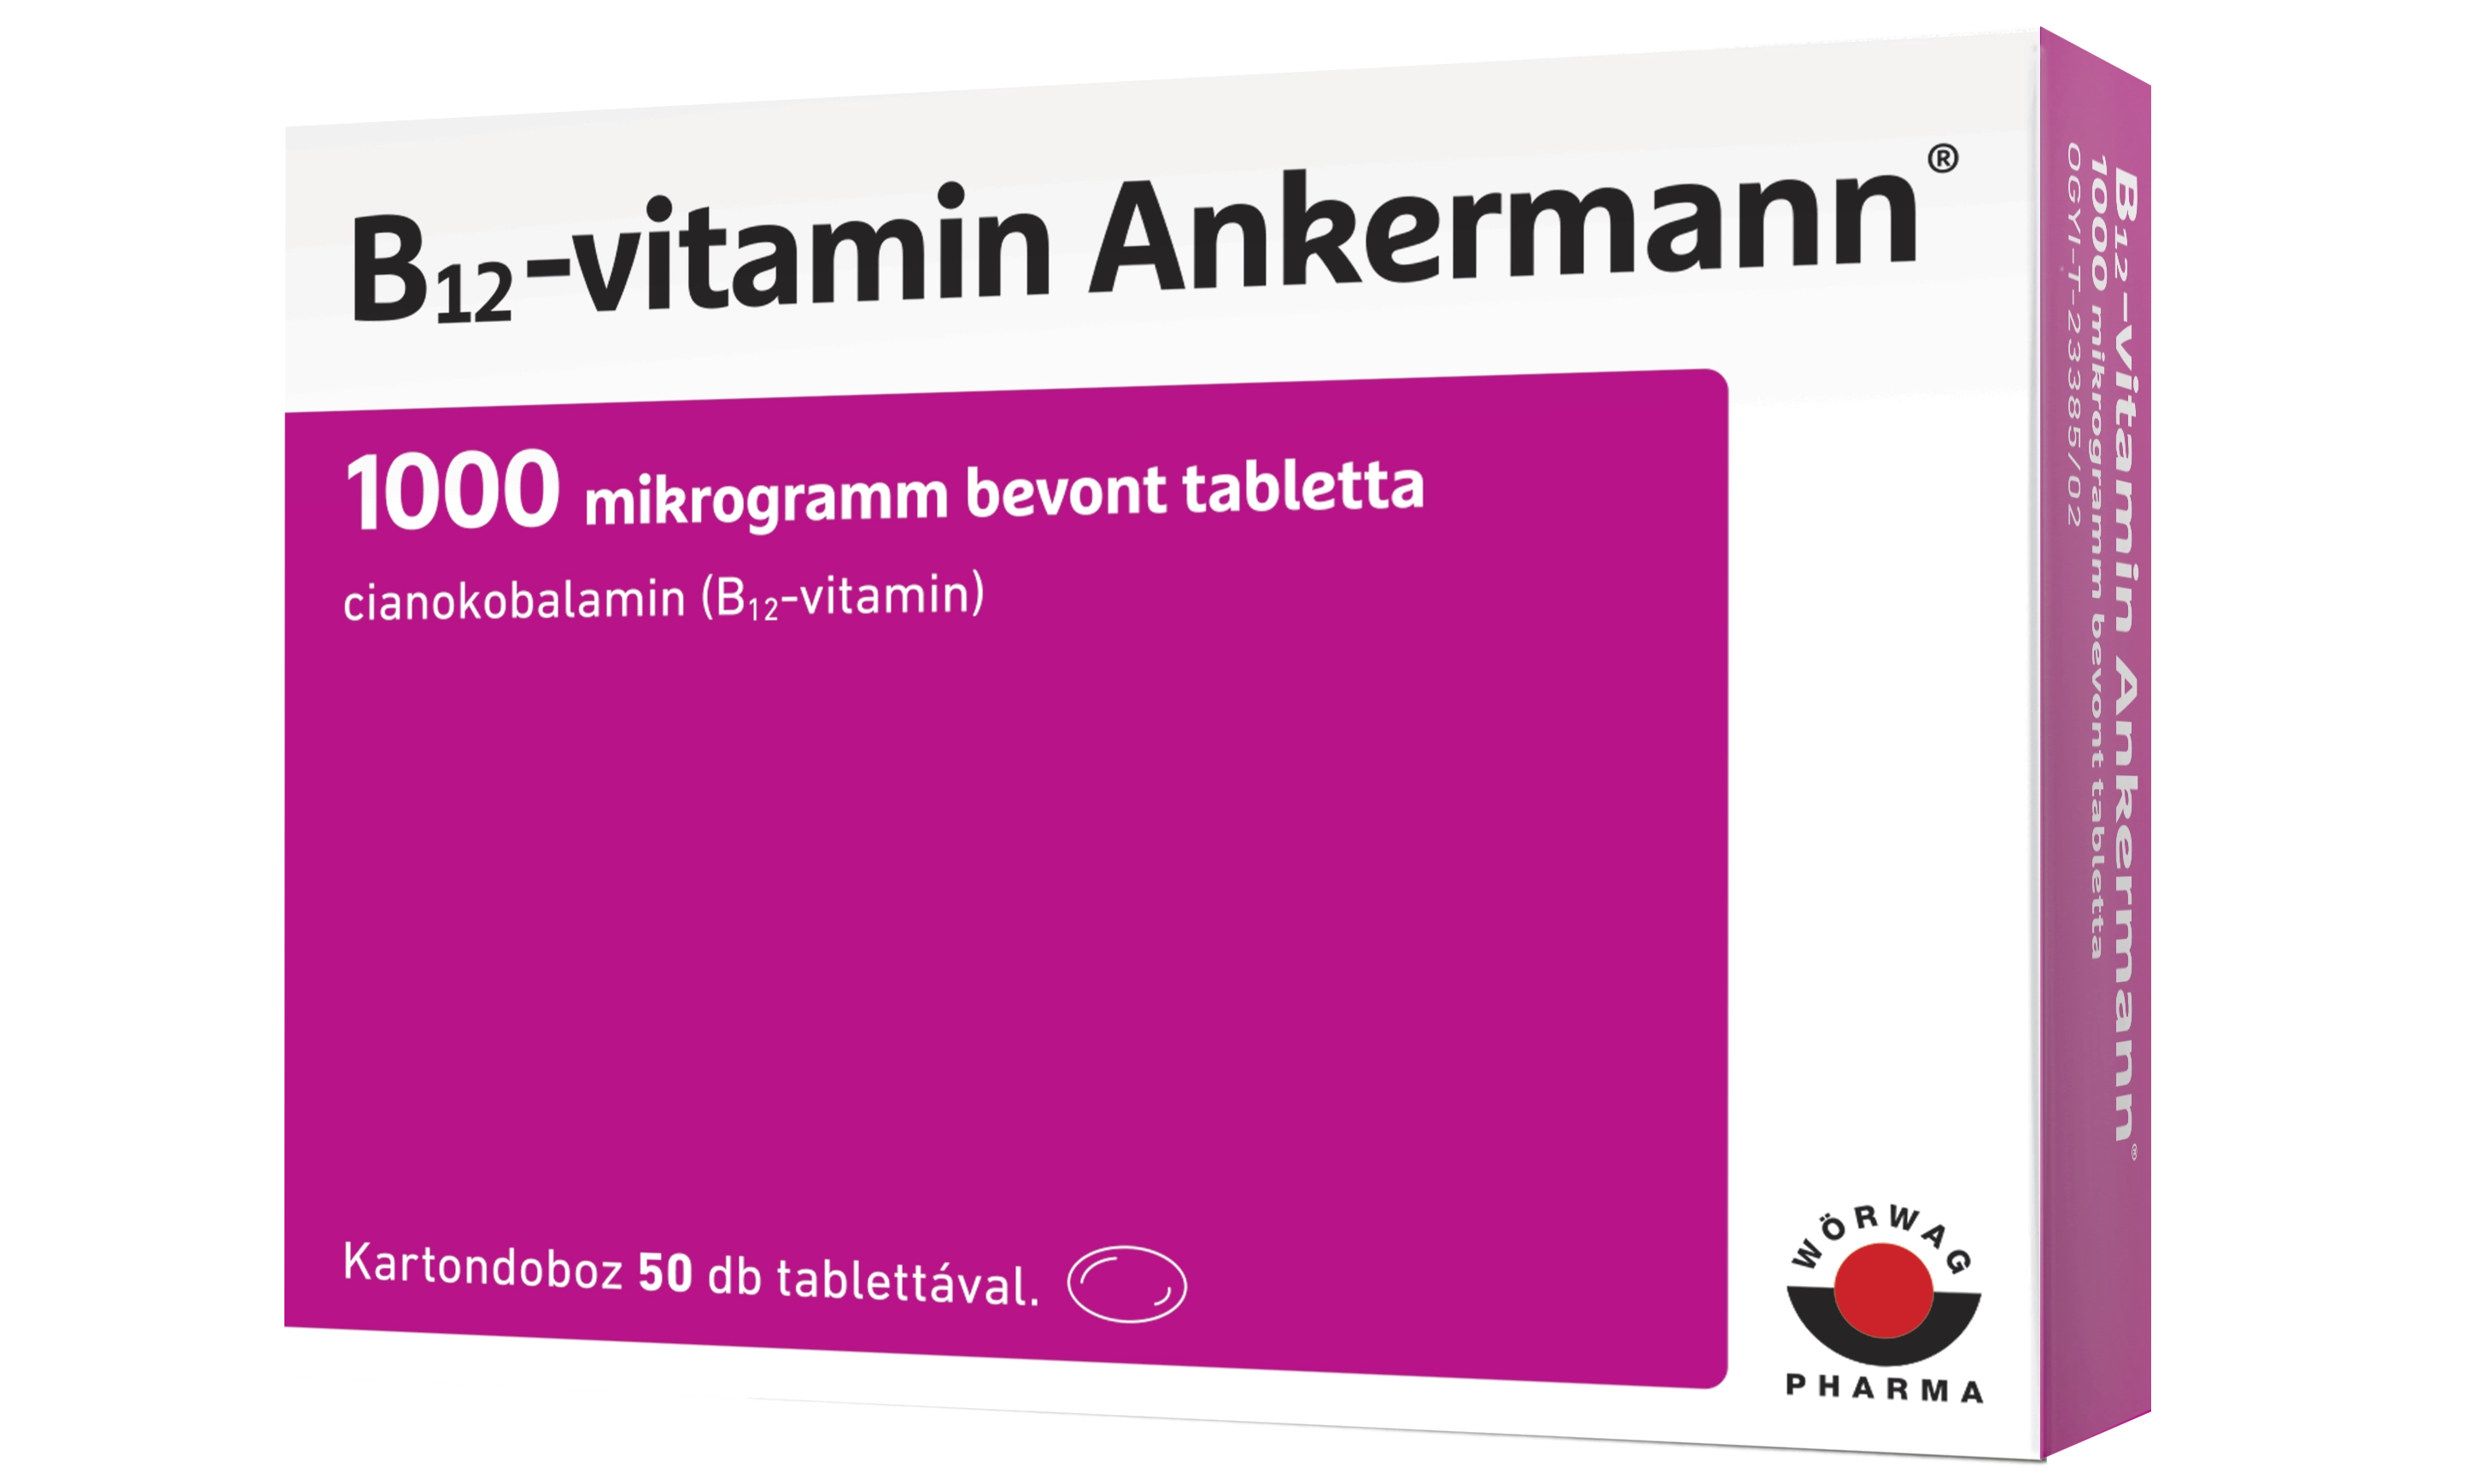 B12-vitamin Ankermann® 1000 mikrogramm bevont tabletta, 50 db